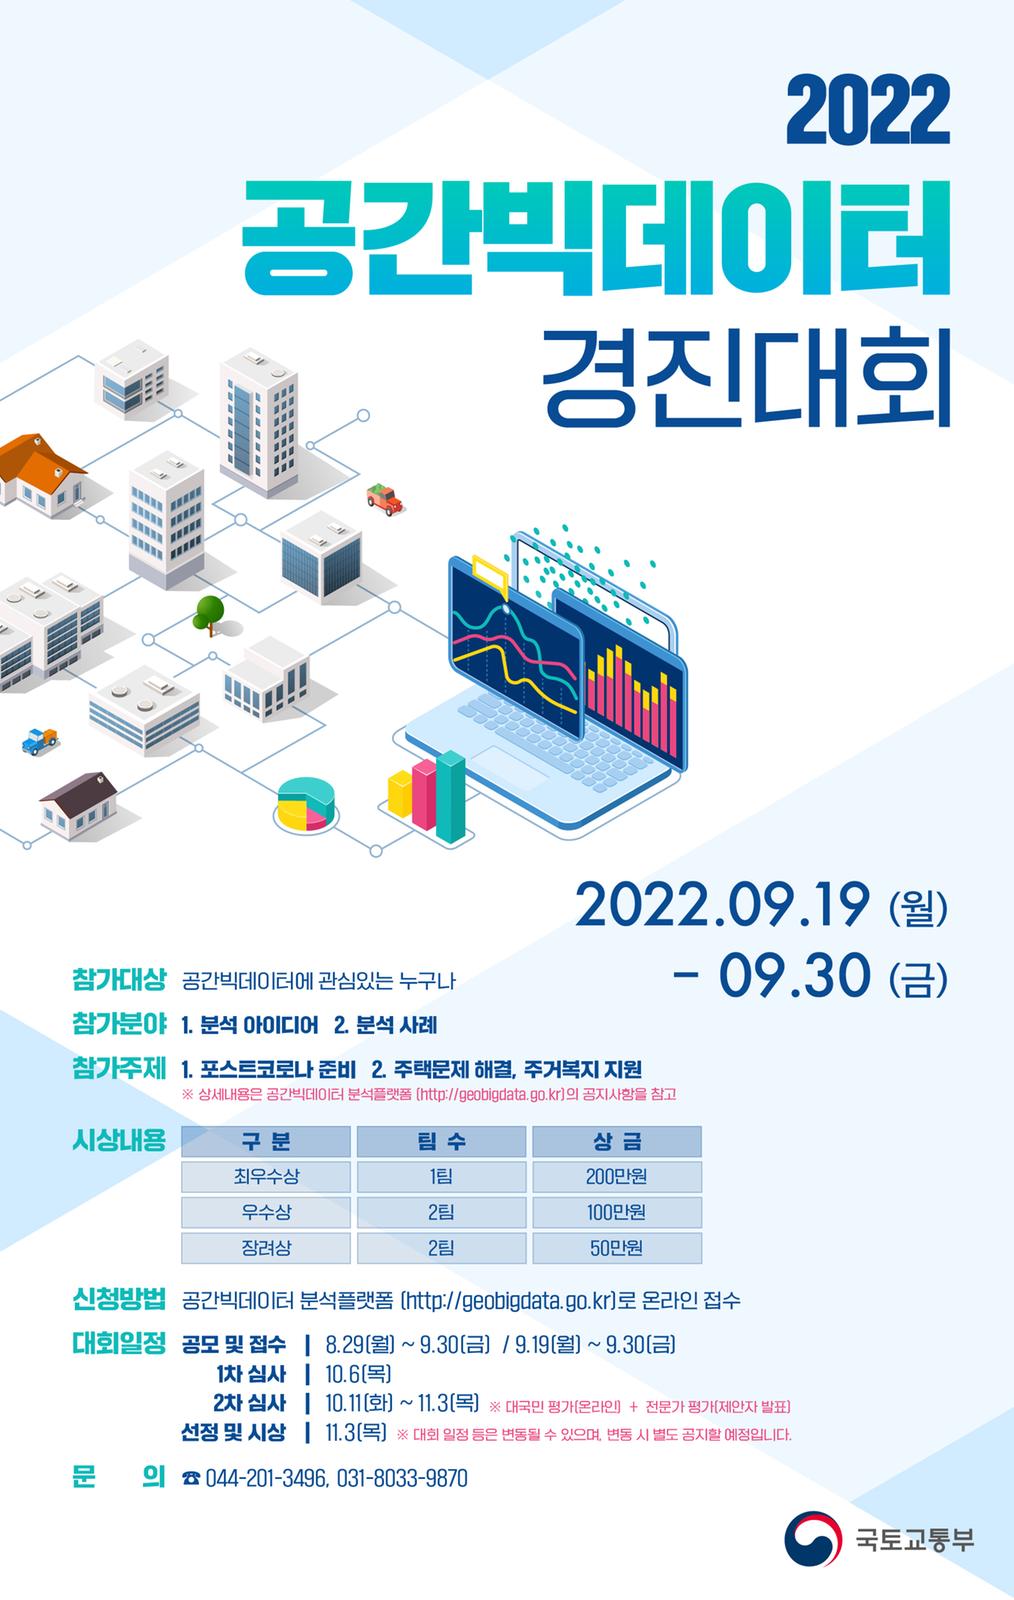 2022 공간빅데이터 경진대회 포스터